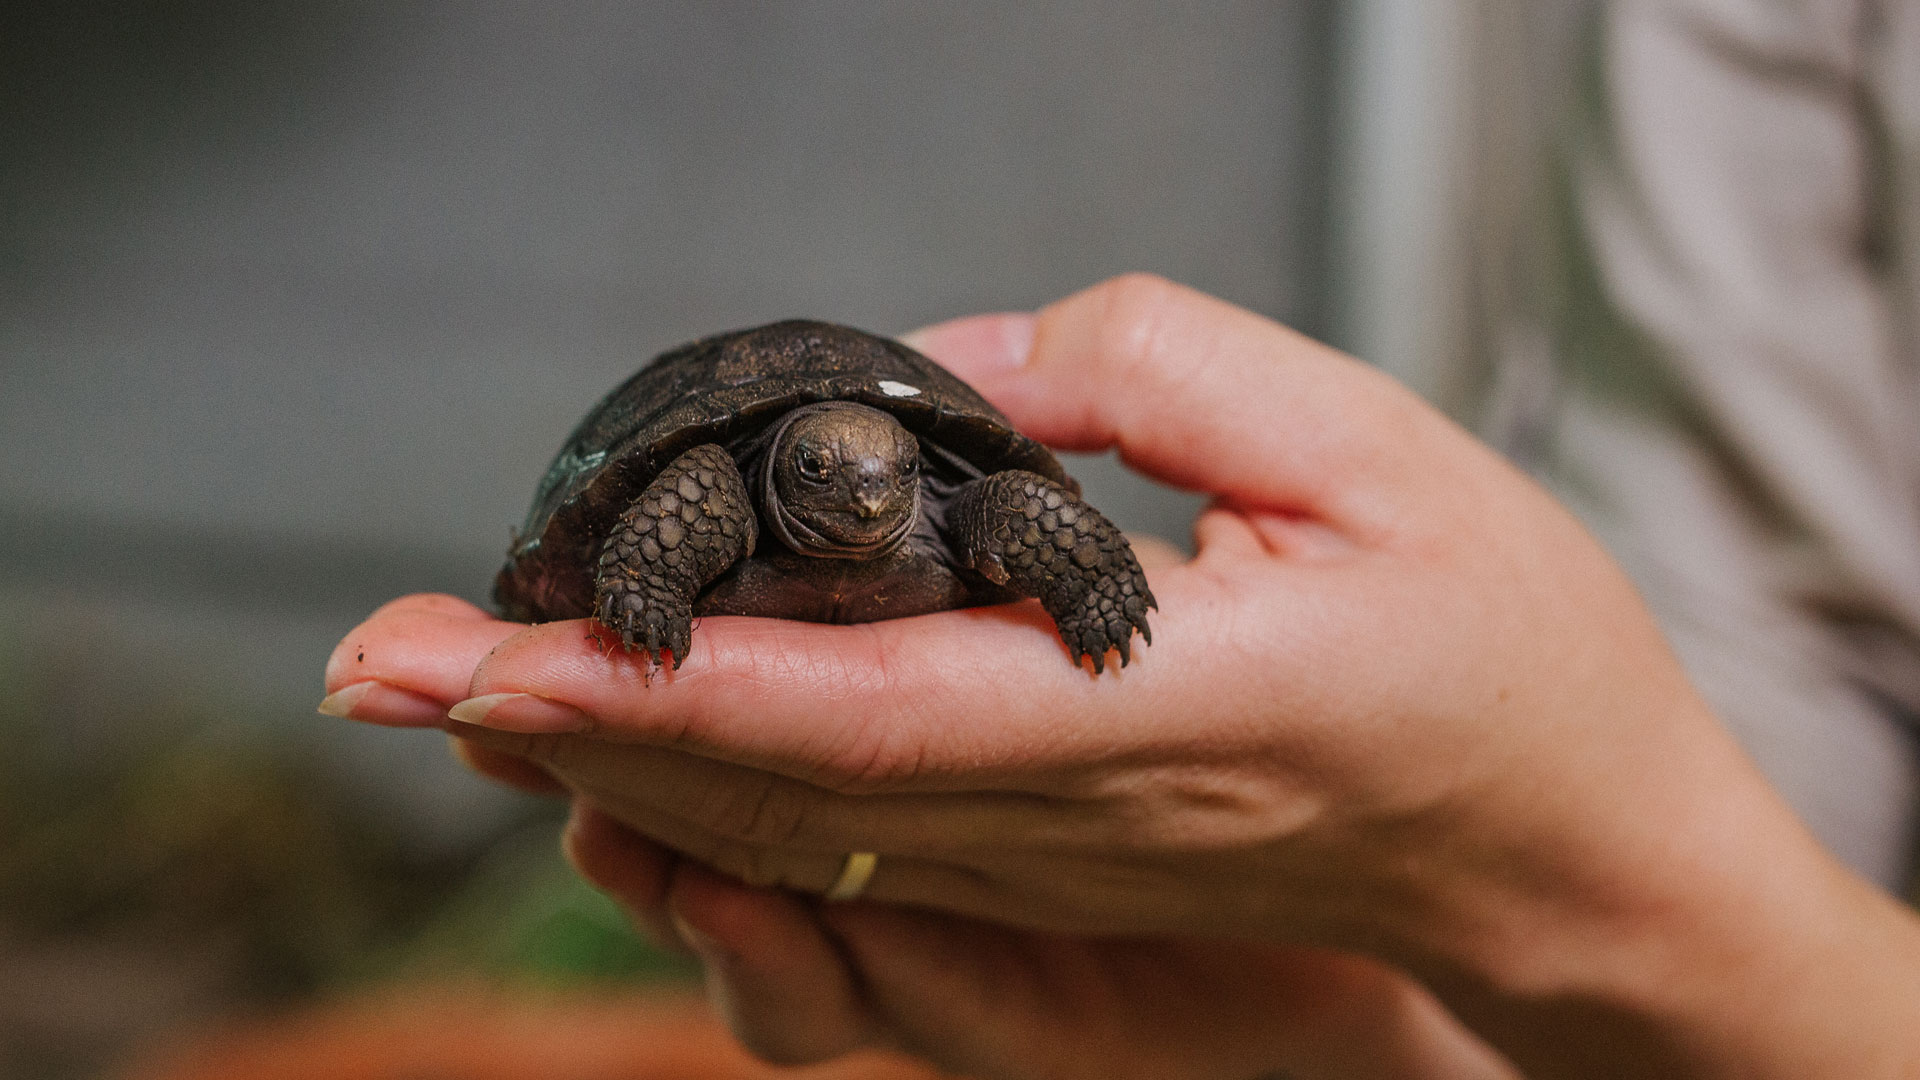 https://rfacdn.nz/zoo/assets/media/galapagos-tortoise-hatchlings-gallery-12.jpg